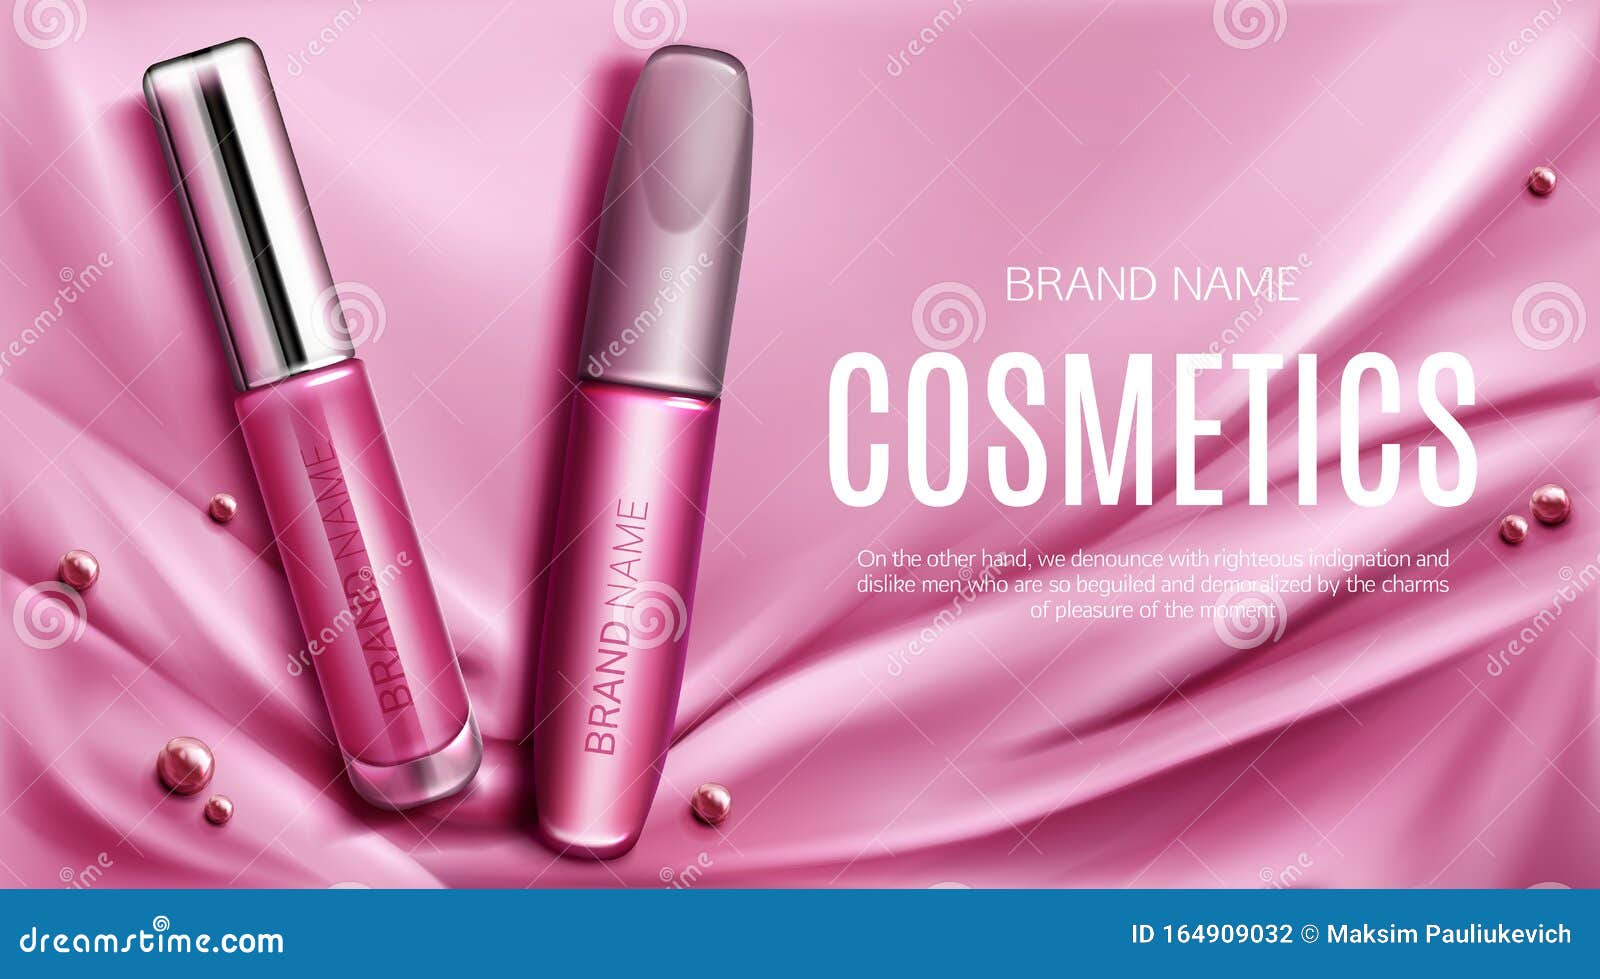 Download Lip Gloss And Mascara Tubes Mockup Promo Banner Stock ...